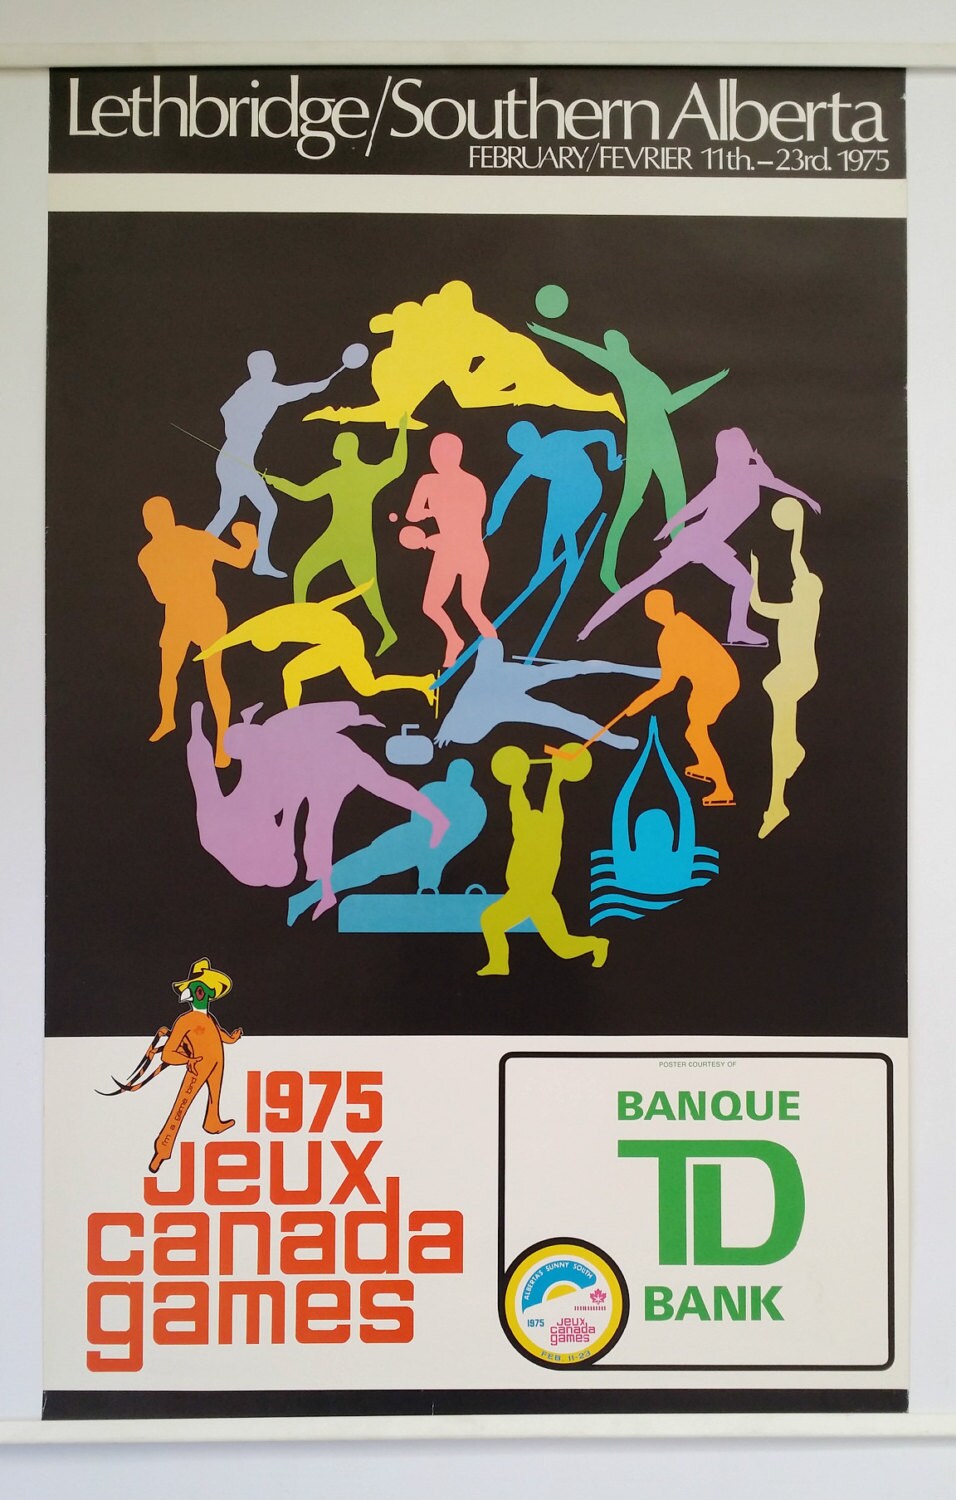 1975 Jeux Canada Games - Original Vintage Poster